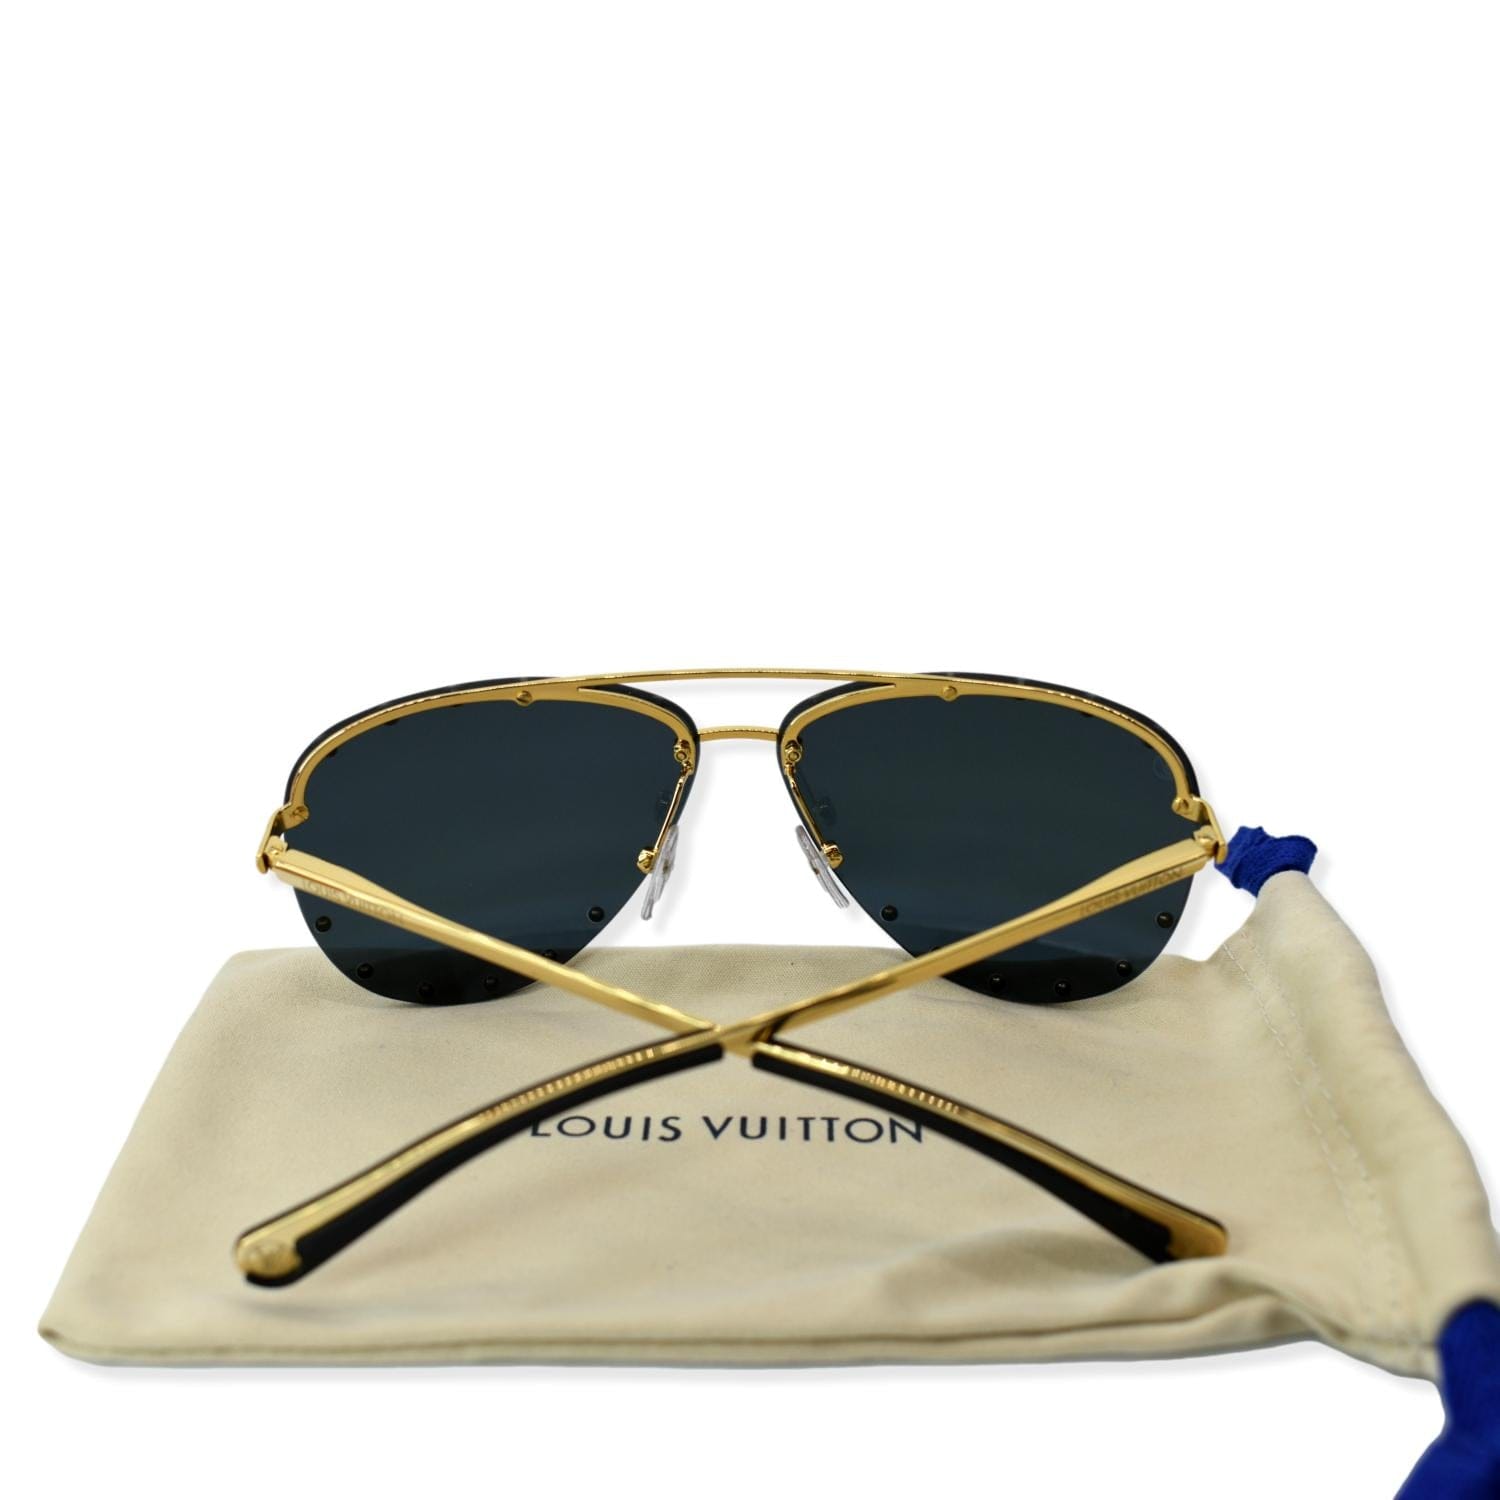 Louis Vuitton sunglasses  Sunglasses, Louis vuitton sunglasses, Louis  vuitton